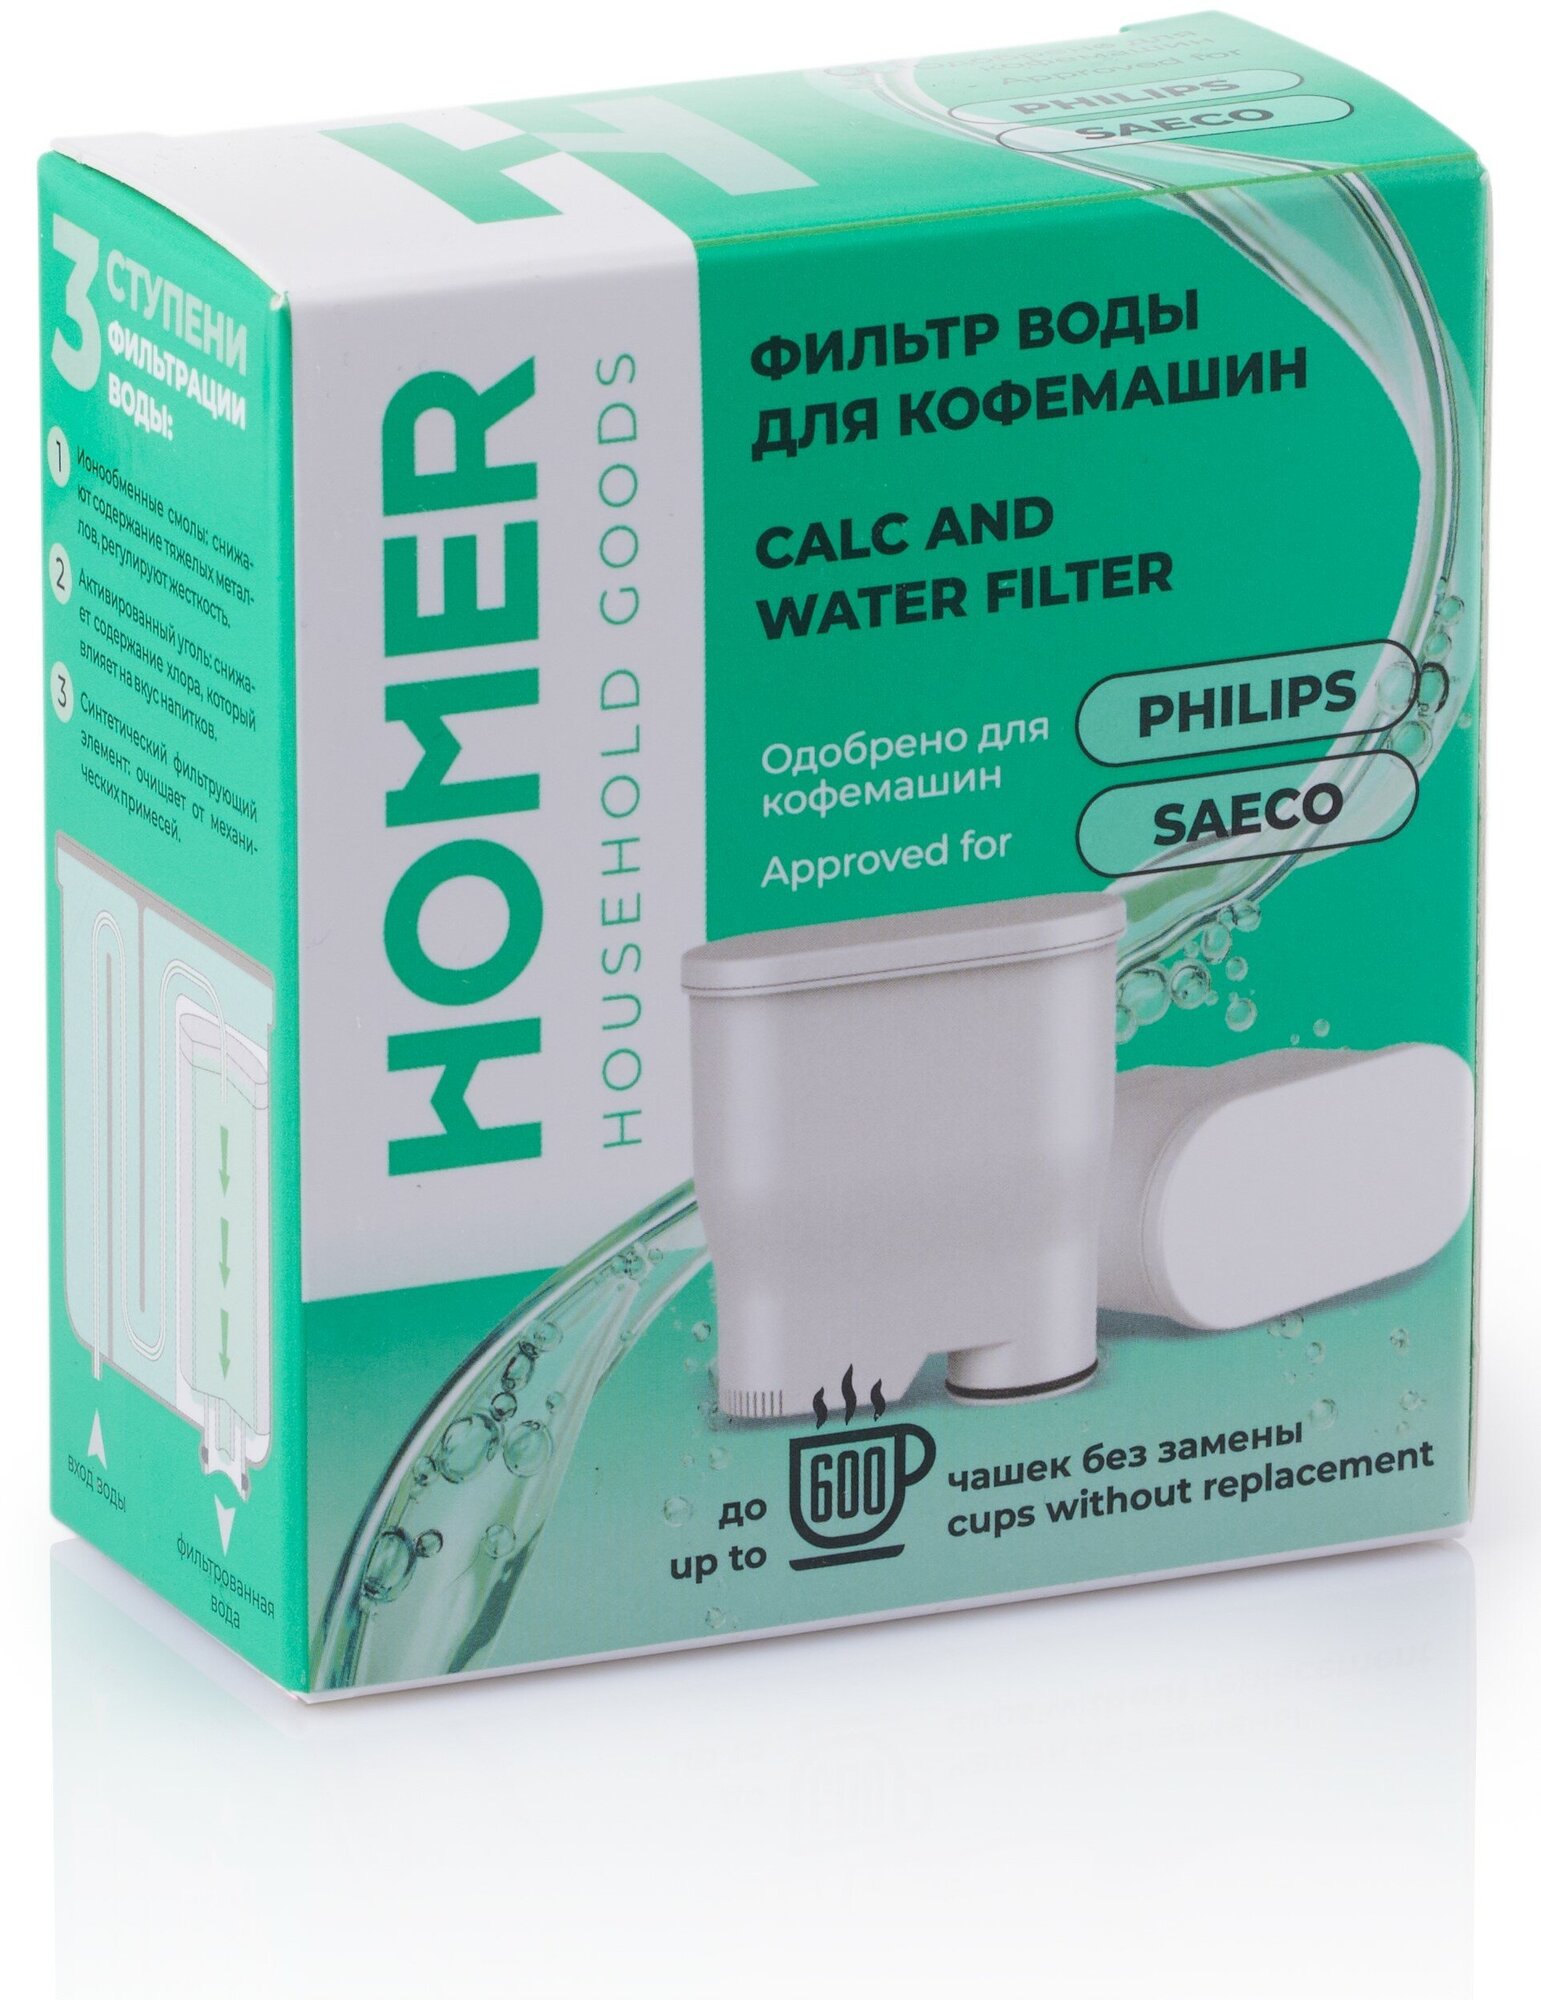 Фильтр воды для кофемашин Philips и Saeco HOMER H-1001 картридж Филипс aqua clean для очистки воды от накипи - фотография № 8